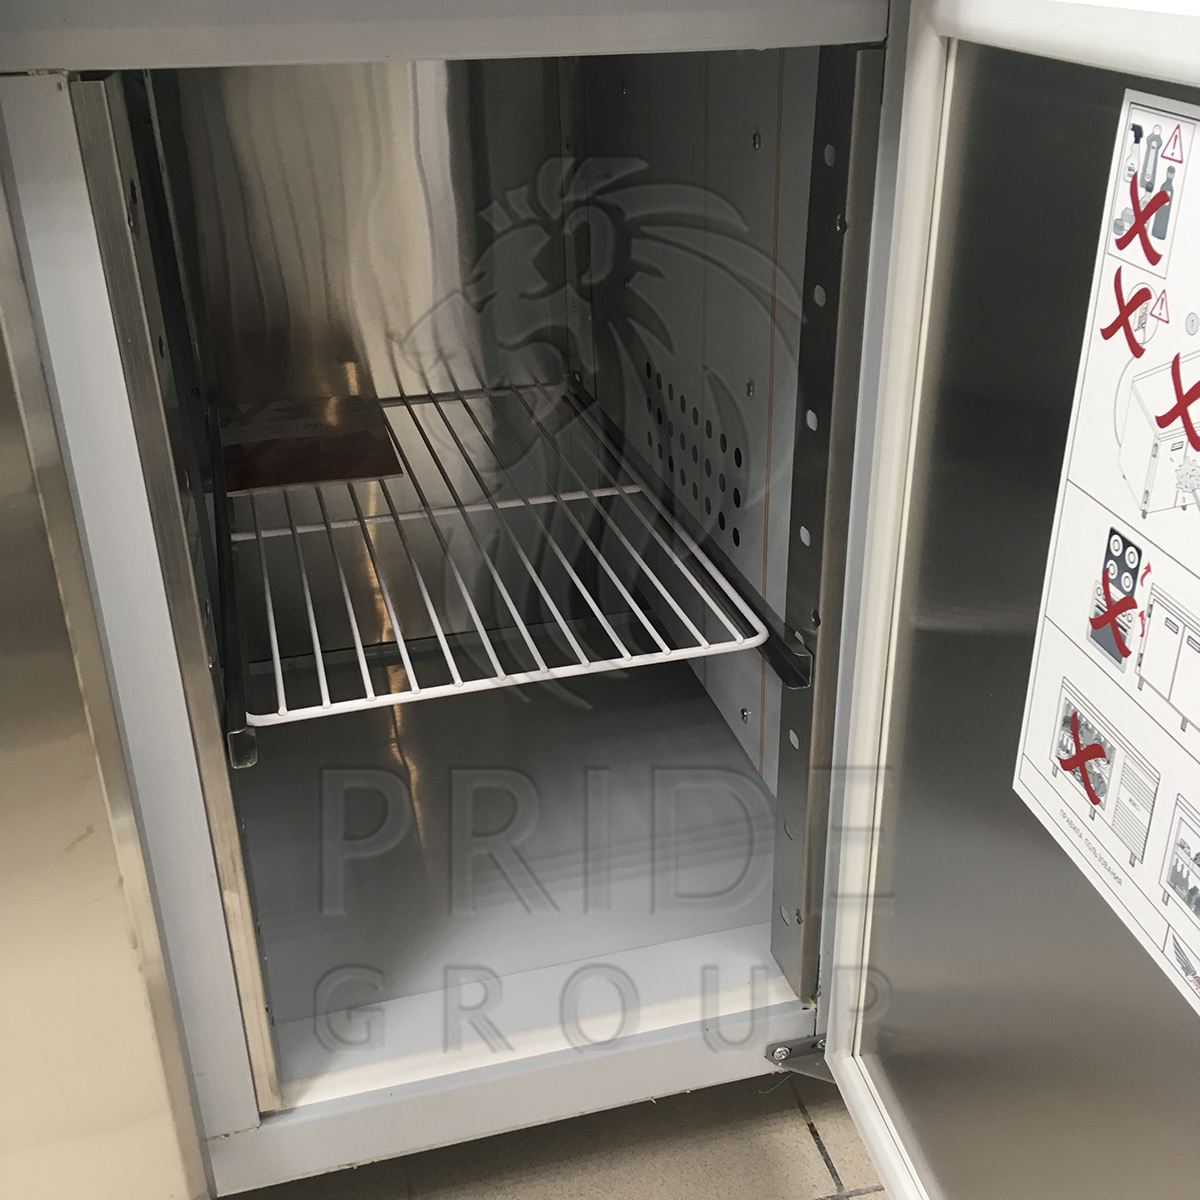 Стол холодильный для пиццы Finist СХСпцг-700-2 гранит 1400х700х850 мм